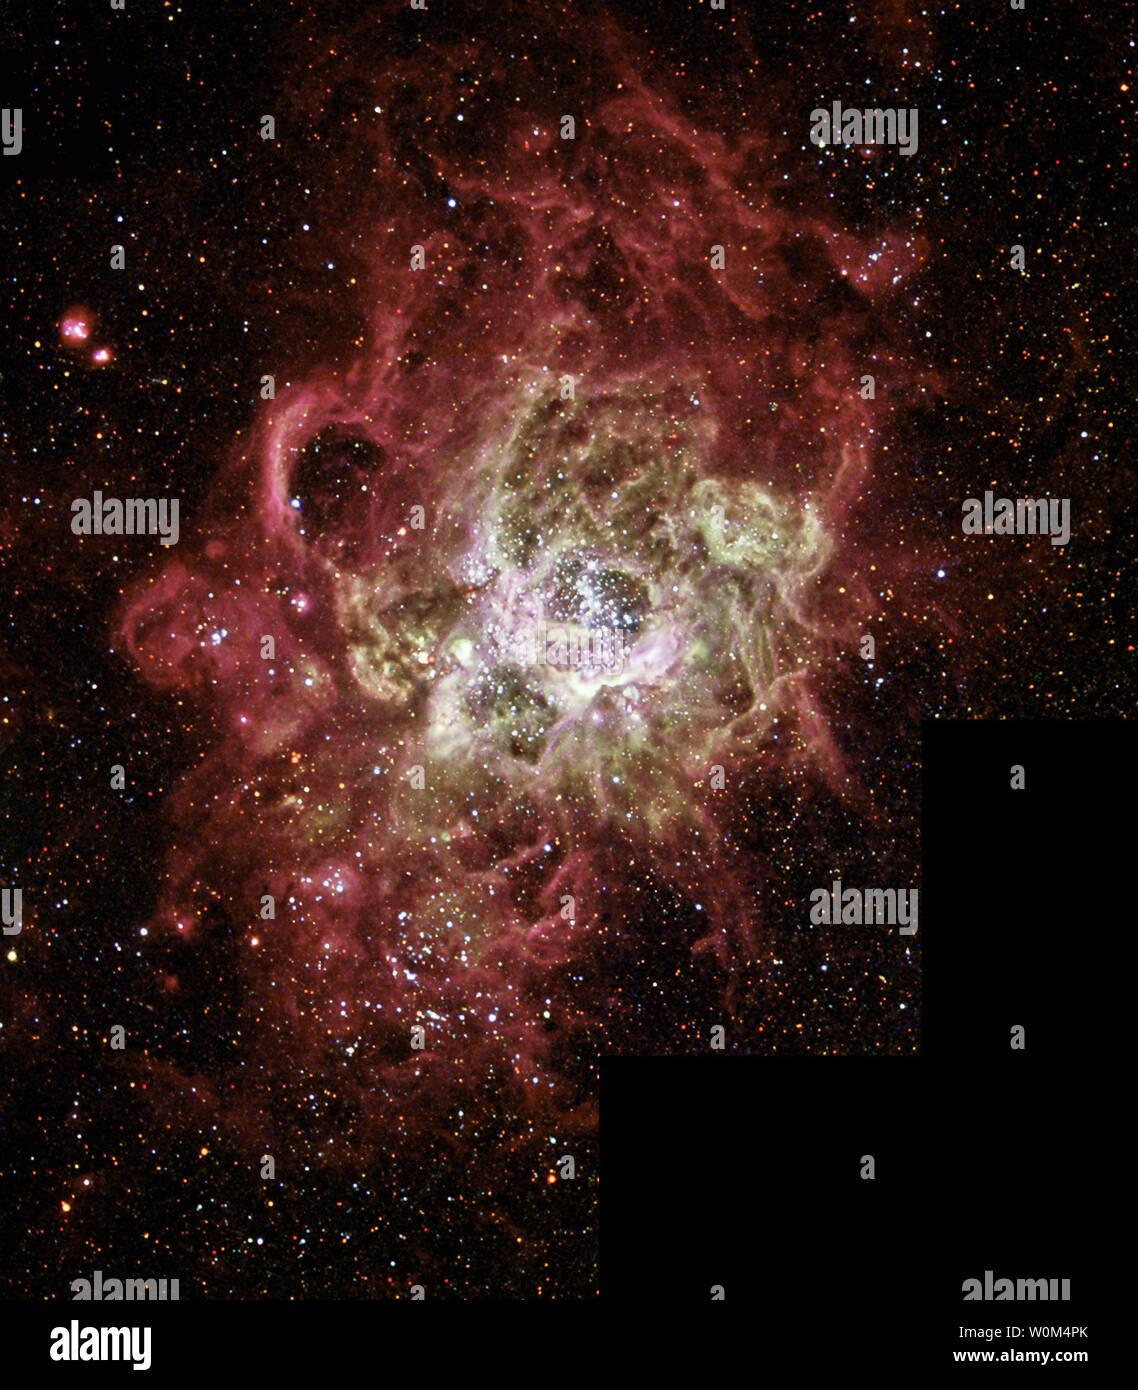 Questo festively nebulosa colorati, chiamato NGC 604, è uno dei più grandi noto seething cauldrons di star nascita visto in una galassia nelle vicinanze. NGC 604 è simile al noto star-nascita regioni nella nostra galassia, la Via Lattea, come la nebulosa di Orione, ma è di gran lunga maggiore in misura e contiene molti di più recente formazione stelle. Questo mostruoso star-nascita regione contiene più di 200 blu brillante stelle entro una nube di gas incandescente circa 1.300 anni-luce attraverso, quasi cento volte la dimensione della nebulosa di Orione. Immagine rilasciato a dicembre 2003. (UPI foto/NASA/Hubble) Foto Stock